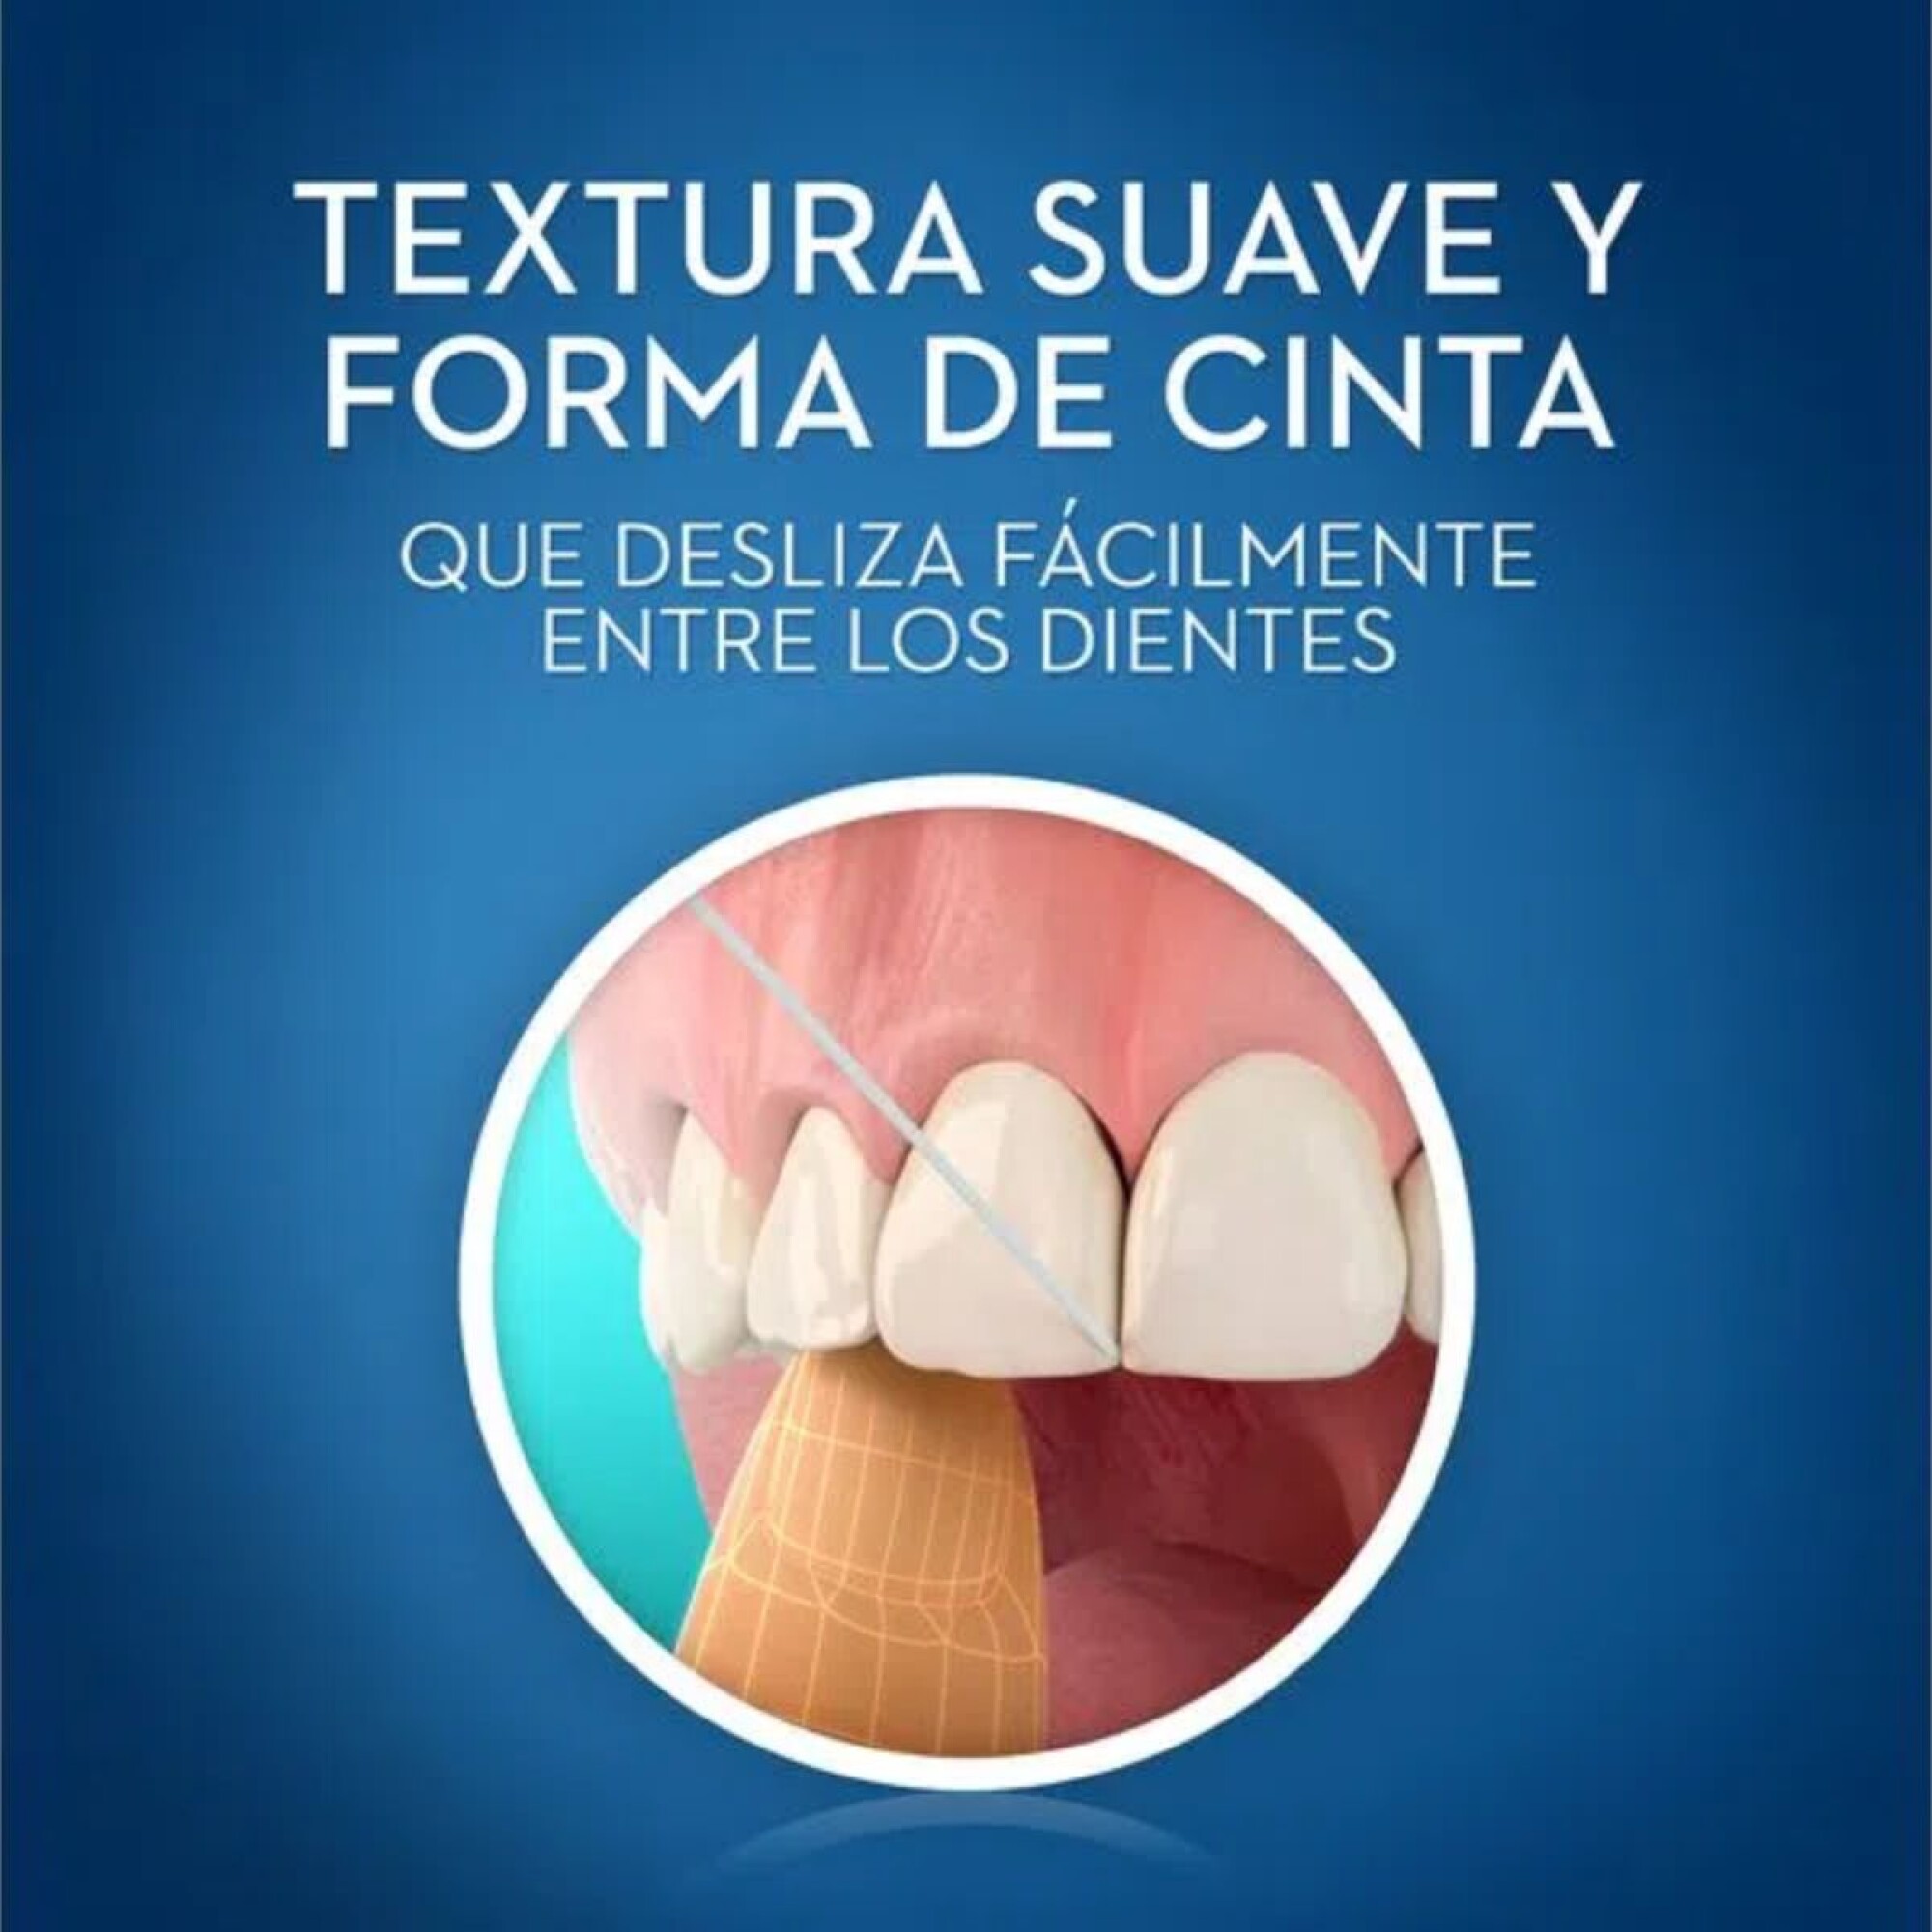 Hilo Dental Oral-B Expert Pro-Salud, 25 m.